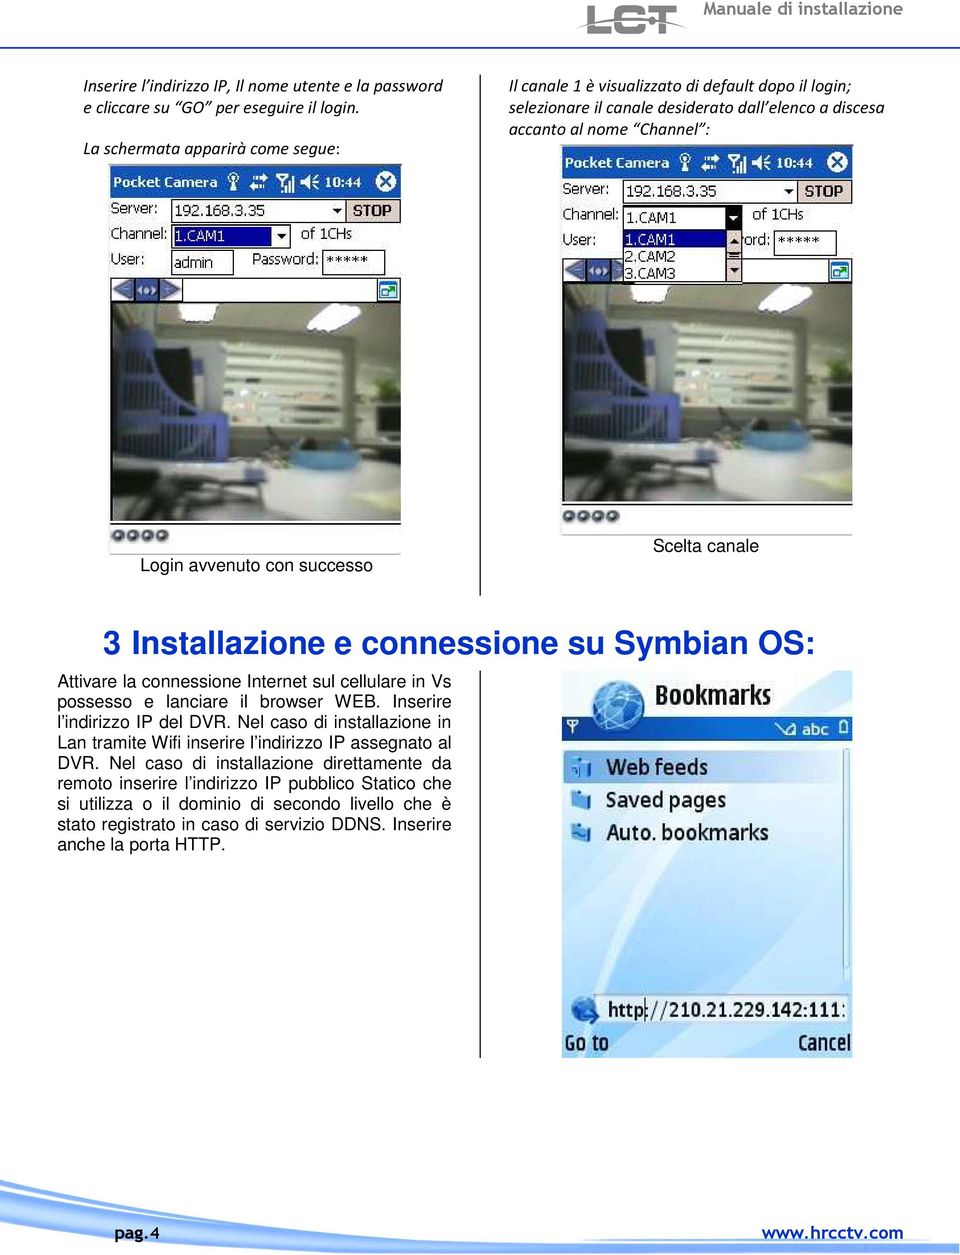 Scelta canale 3 Installazione e connessione su Symbian OS: Attivare la connessione Internet sul cellulare in Vs possesso e lanciare il browser WEB. Inserire l indirizzo IP del DVR.